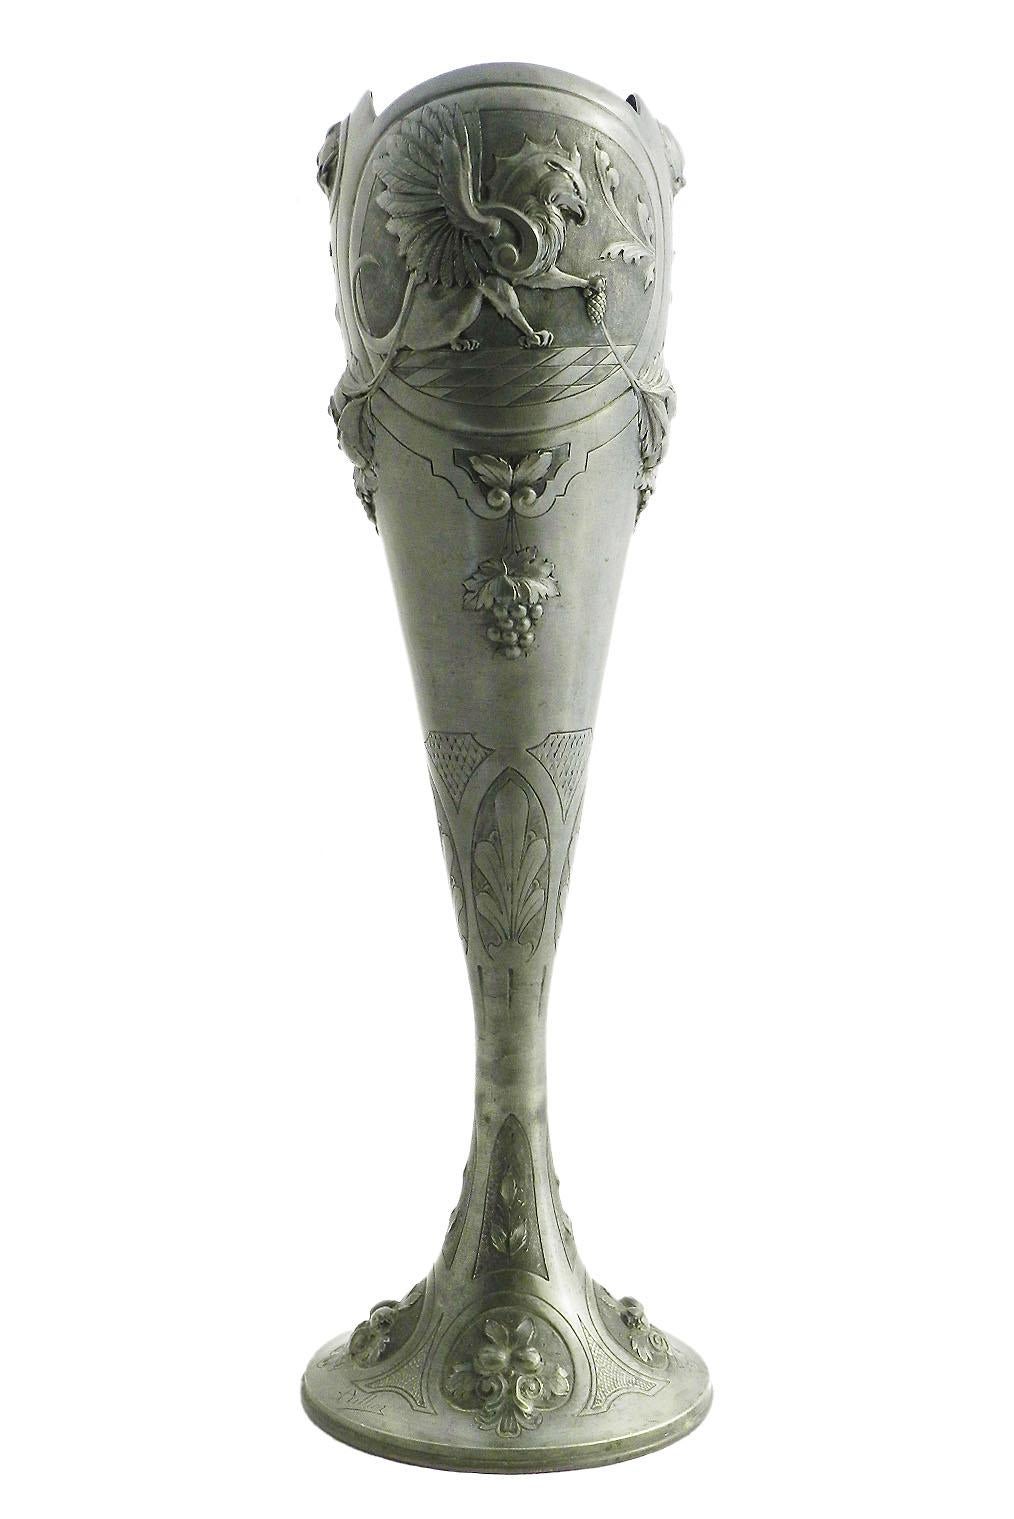 Early 20th Century Art Nouveau Vase Pewter Signed A Villien Monumental Belle Epoque, circa 1900